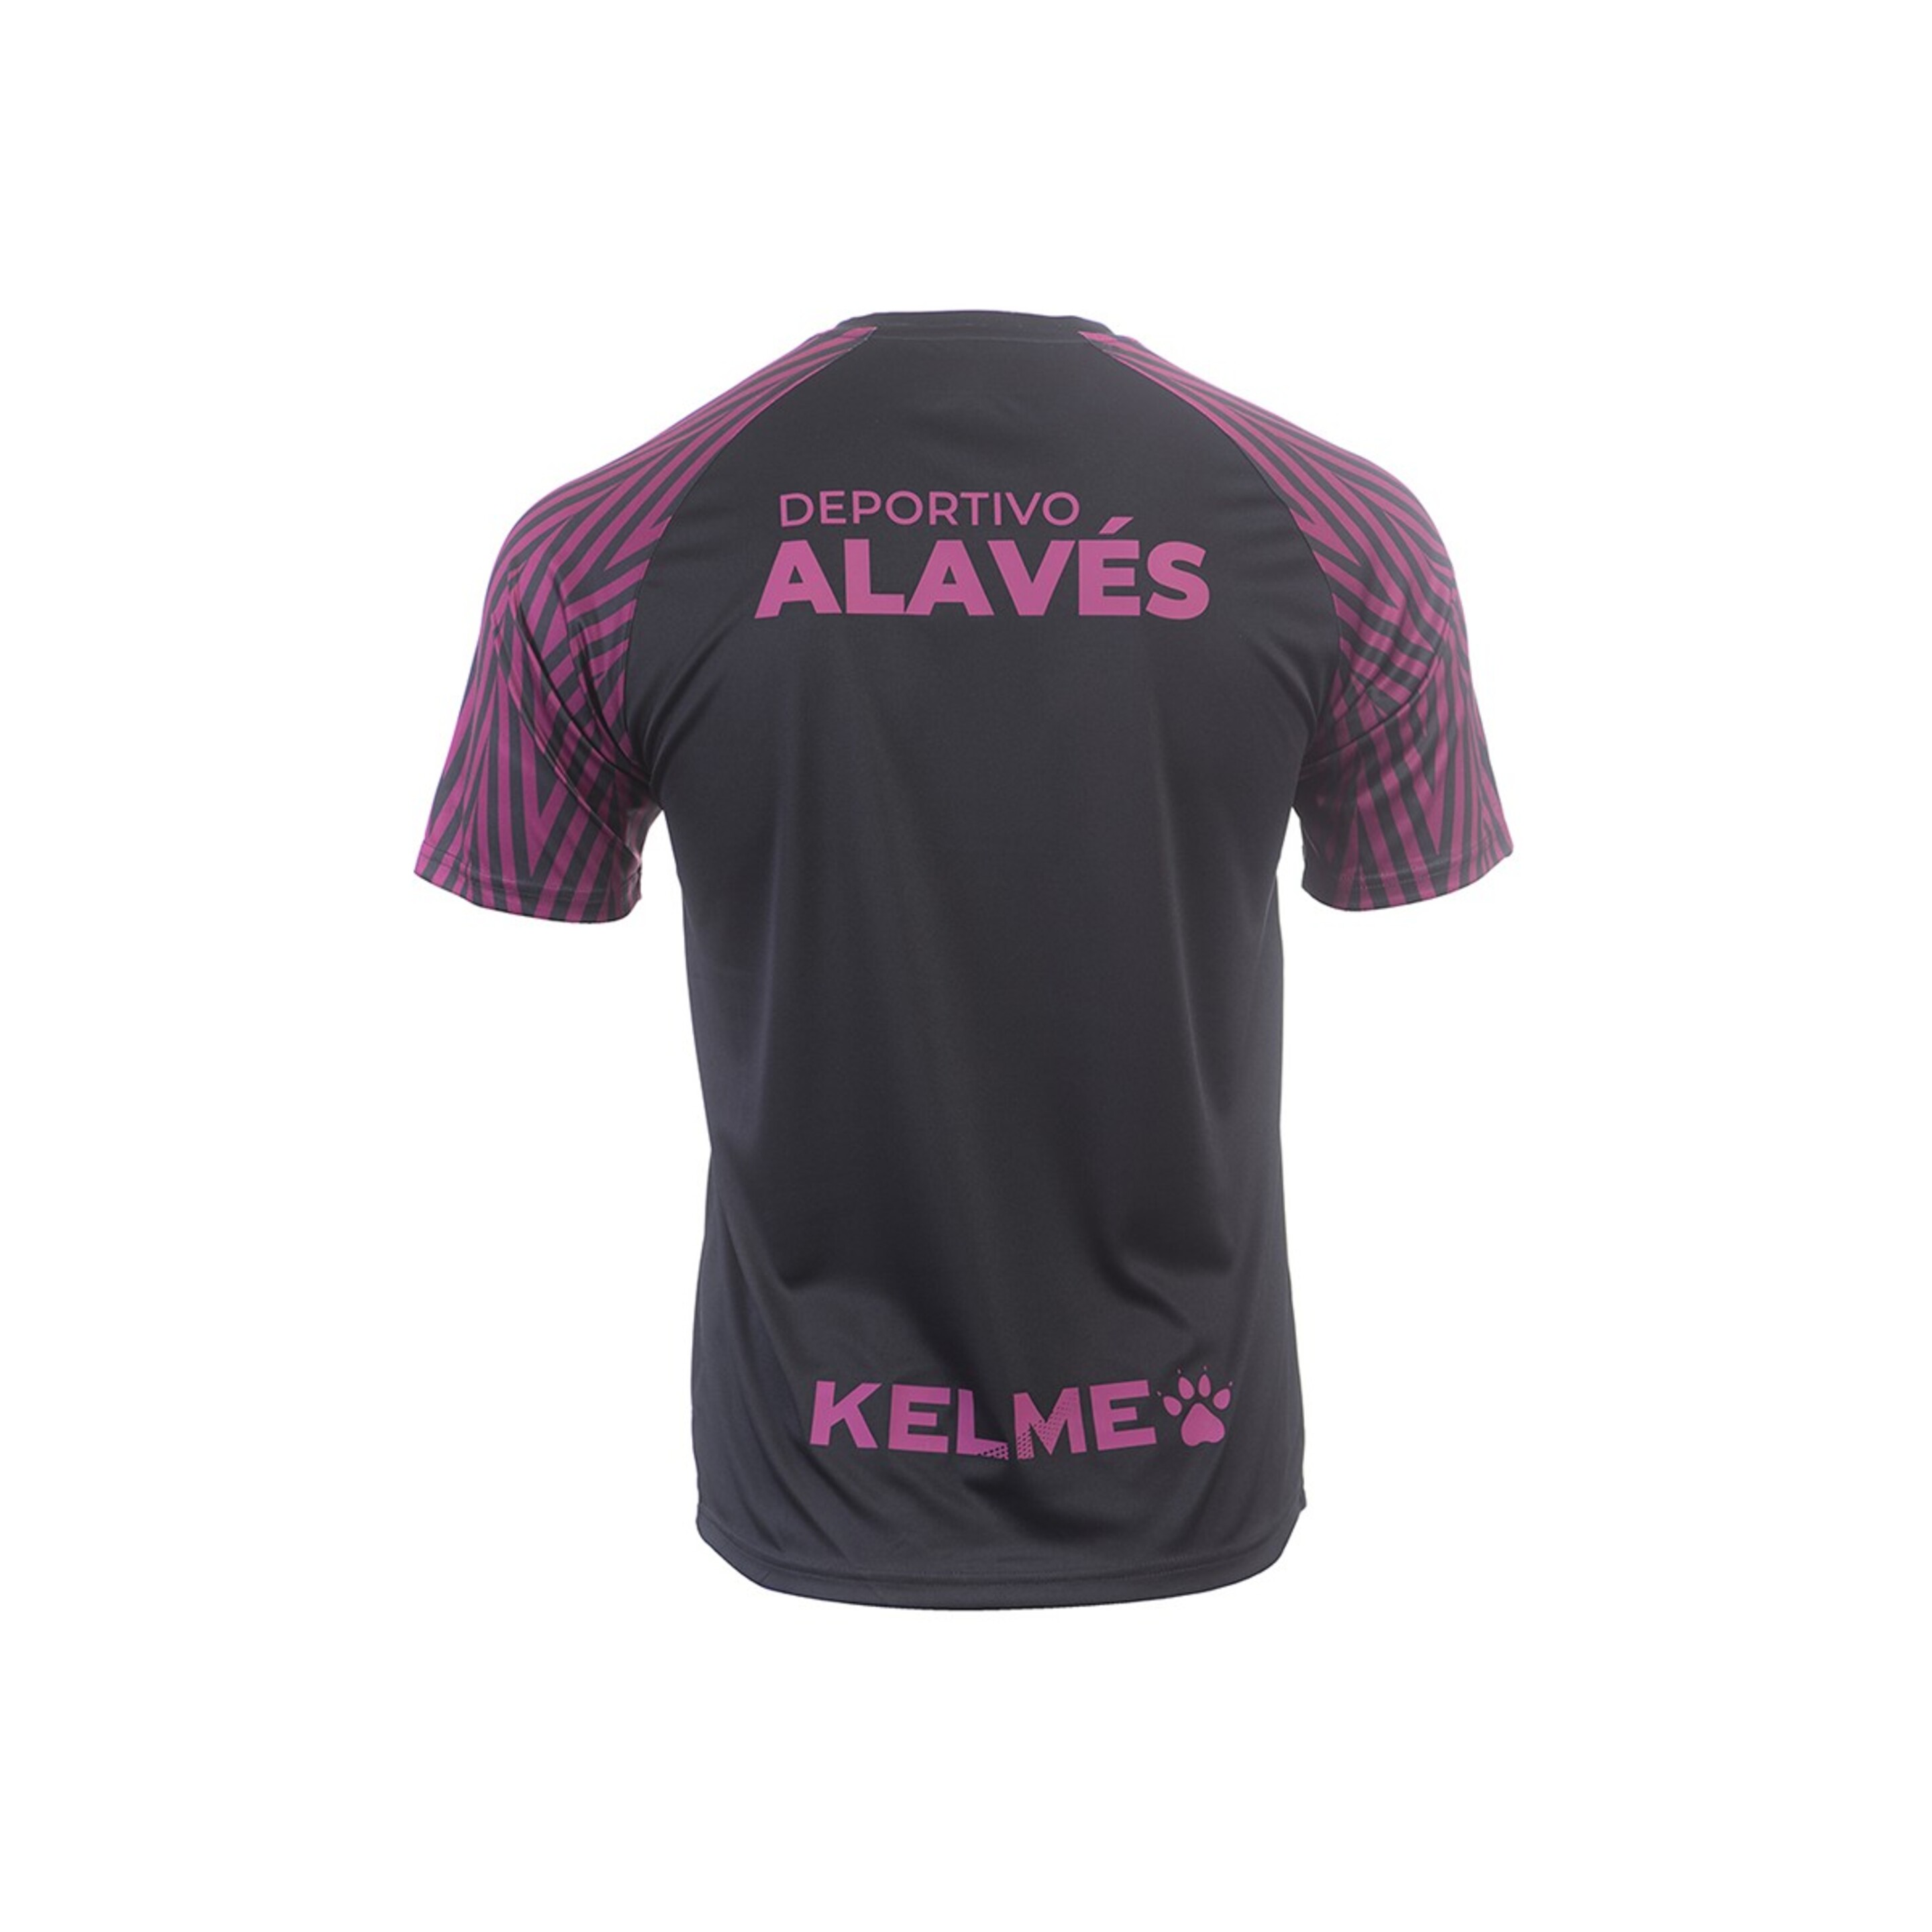 Camiseta M/c Prepartido 2019/20 Alaves Kelme